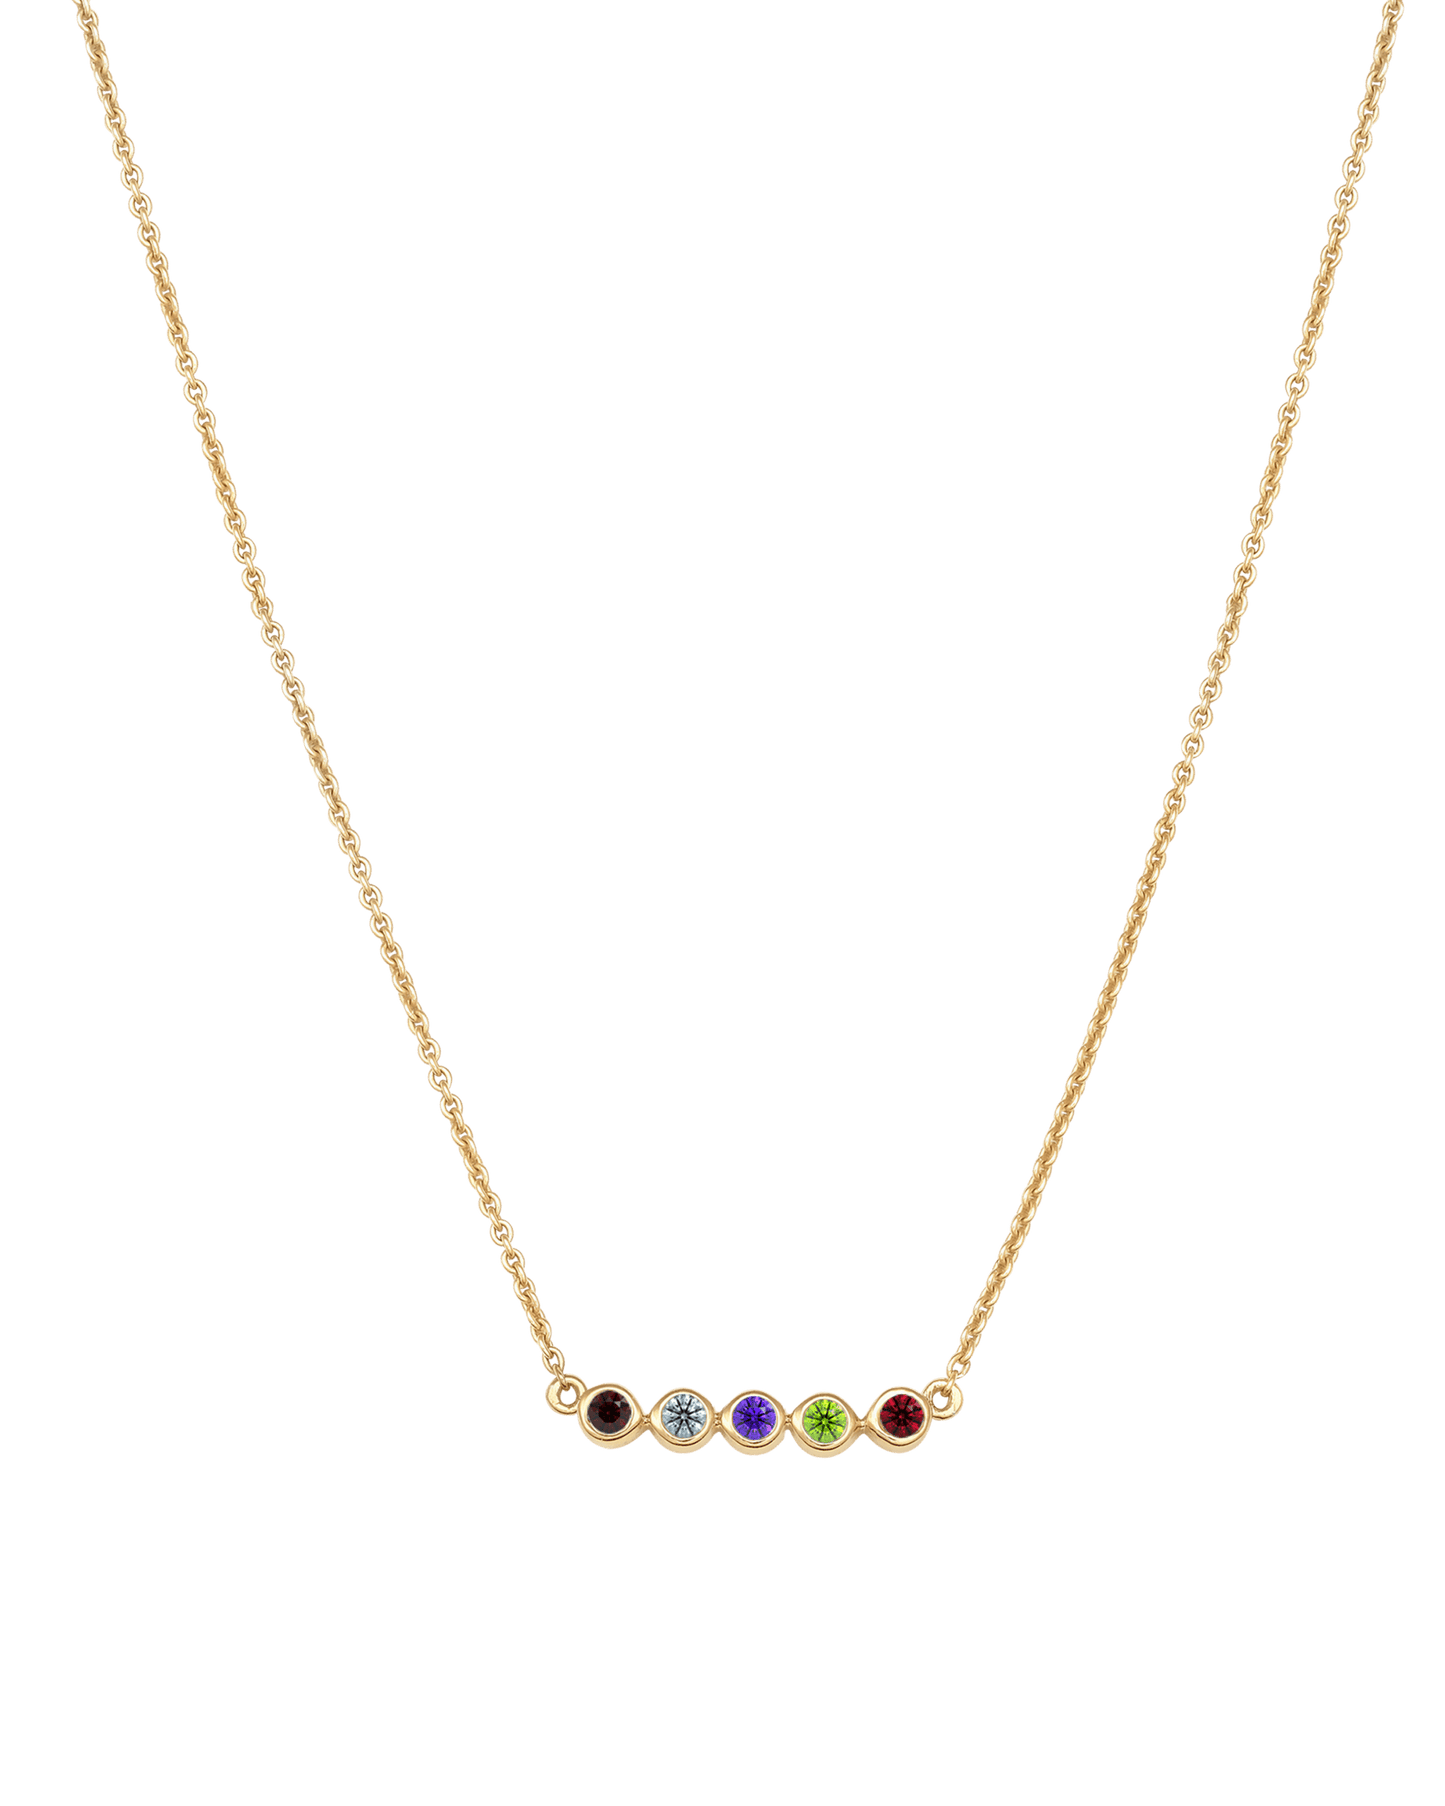 Bauble Birthstone Necklace - 18K Gold Vermeil Necklaces Gold Vermeil 5 Birthstones Small - 16" 